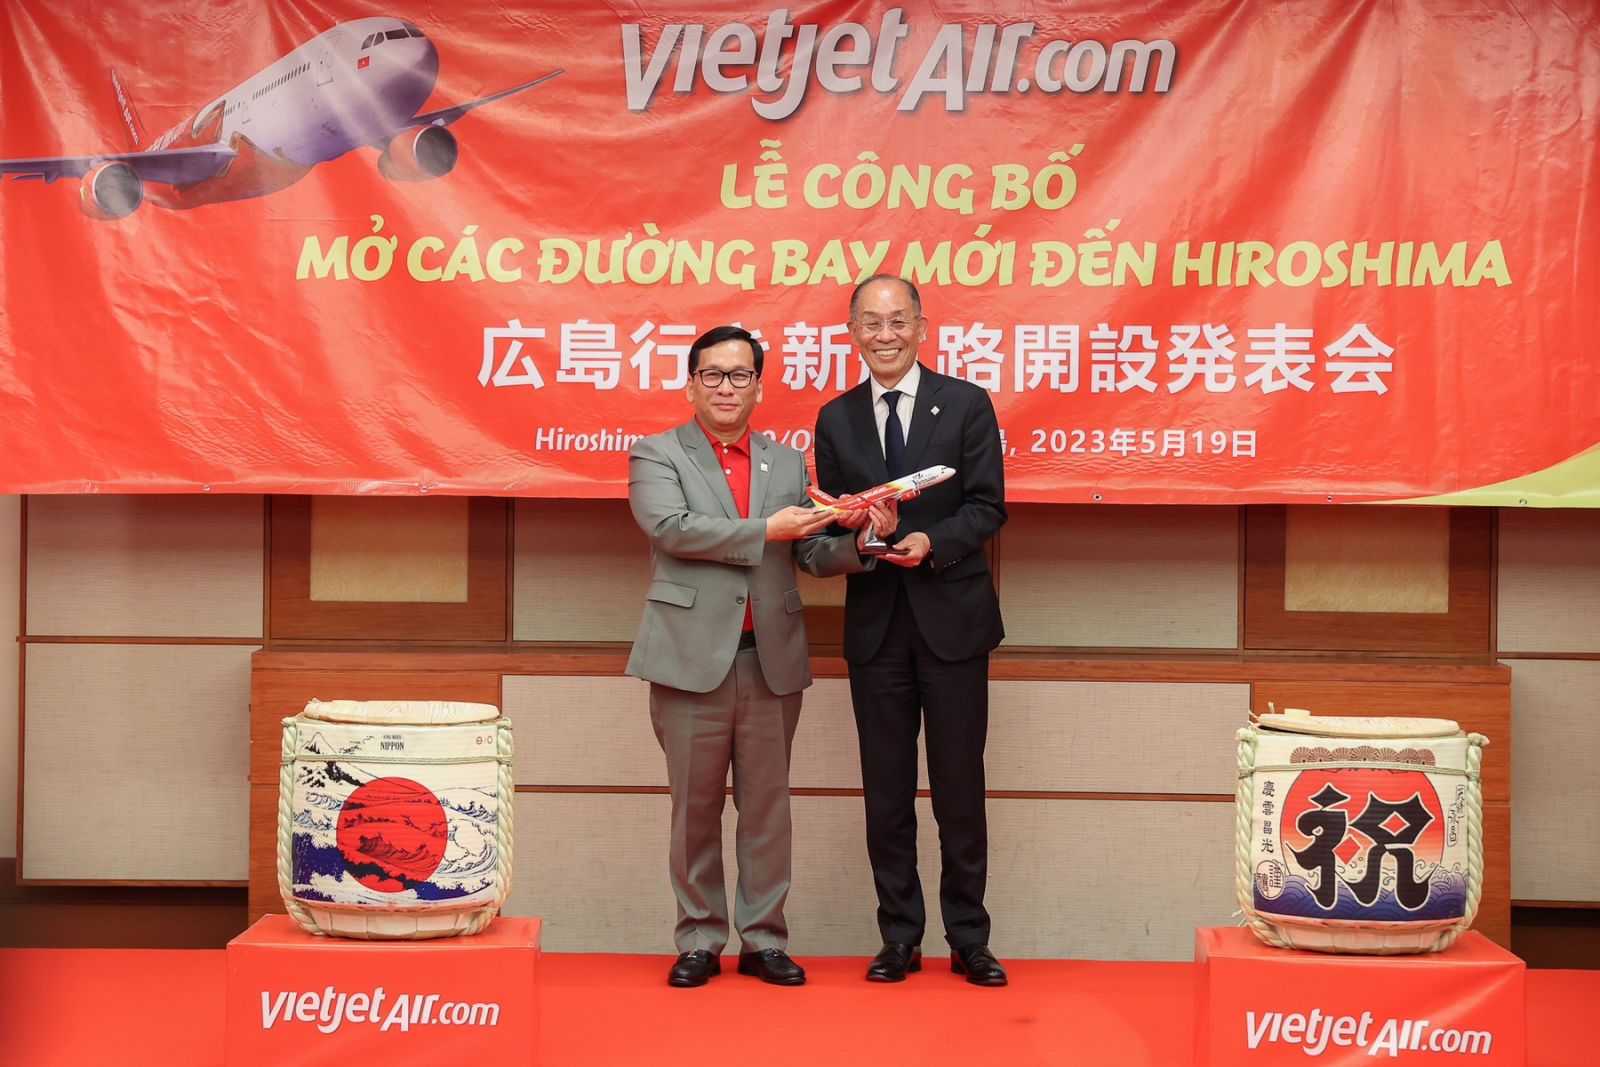 Vietjet vừa công bố đường bay thẳng đầu tiên giữa Việt Nam và Hiroshima